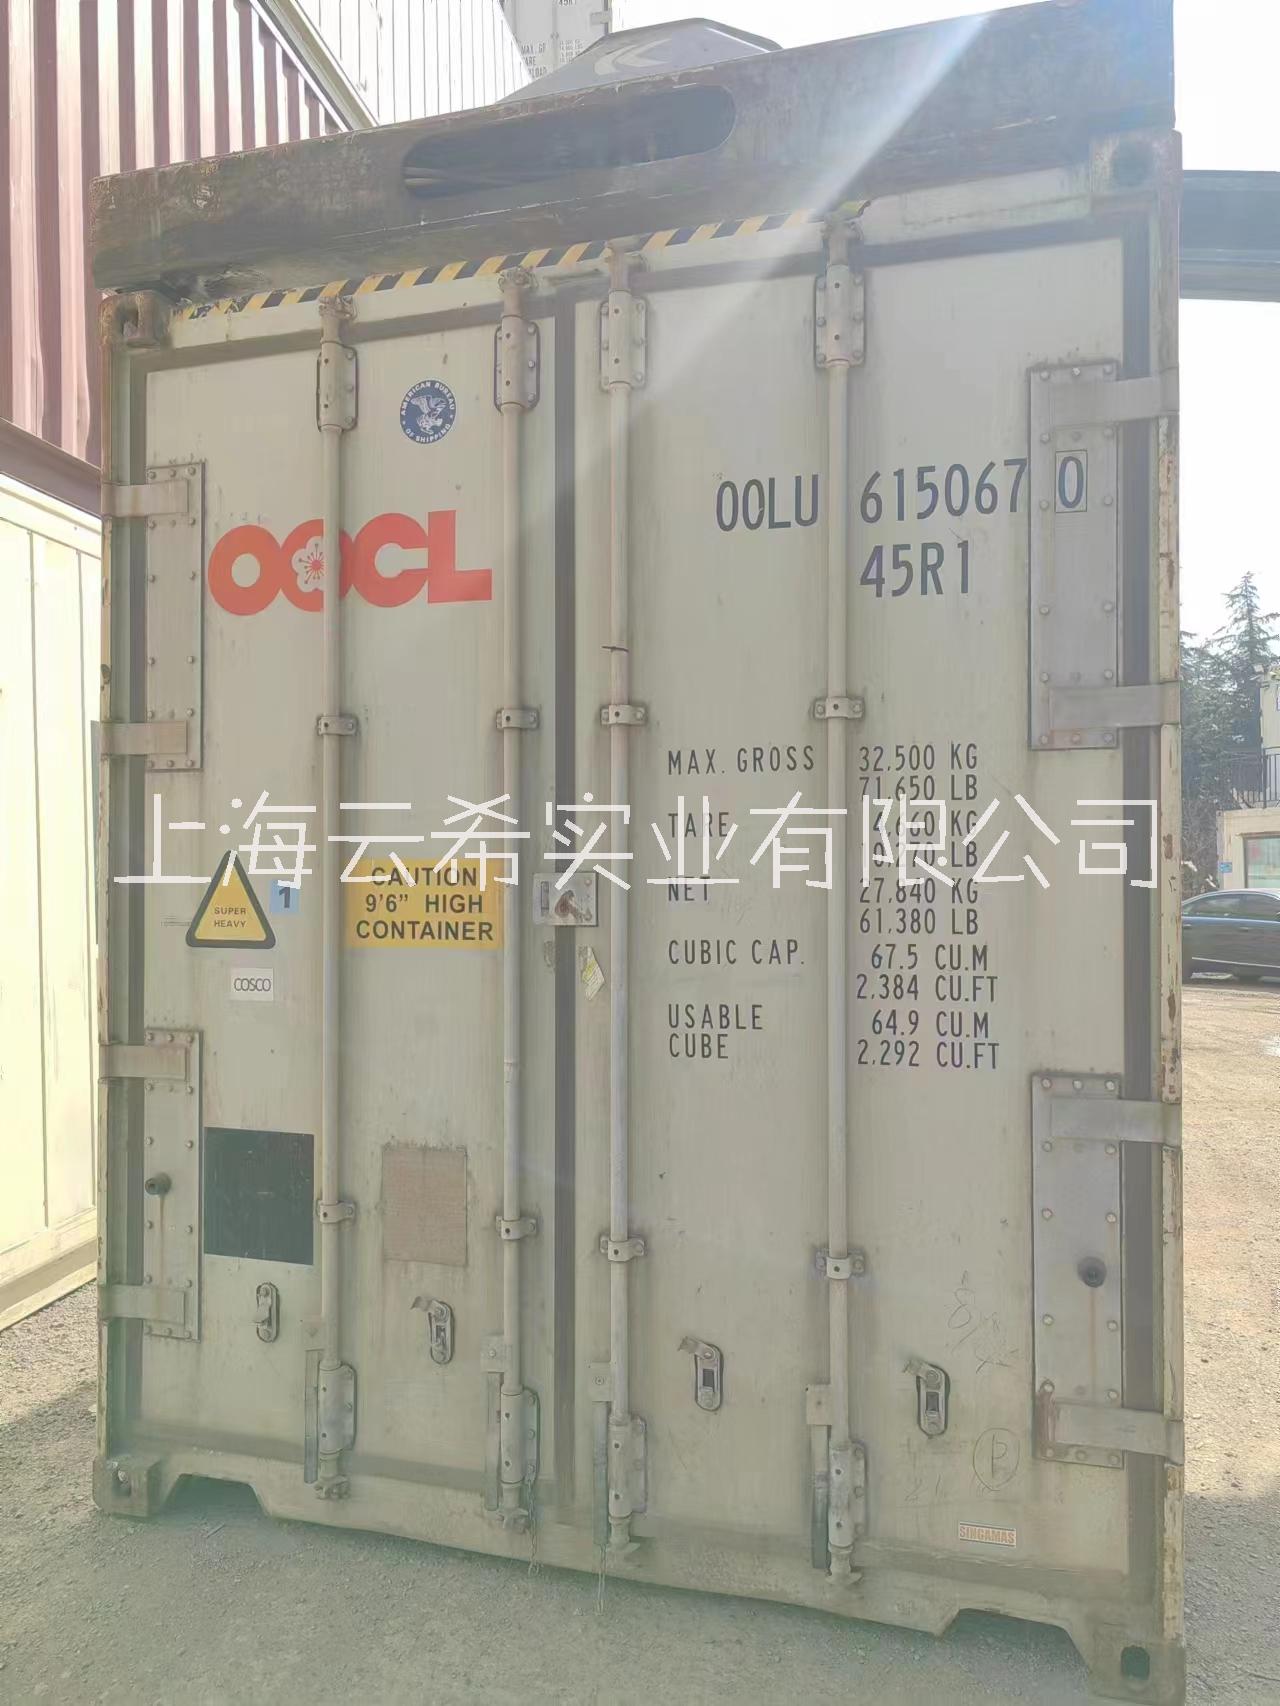 上海租赁出售 冷藏集装箱 冷冻集装箱 二手海运集装箱 货柜集装箱 仓库集装箱